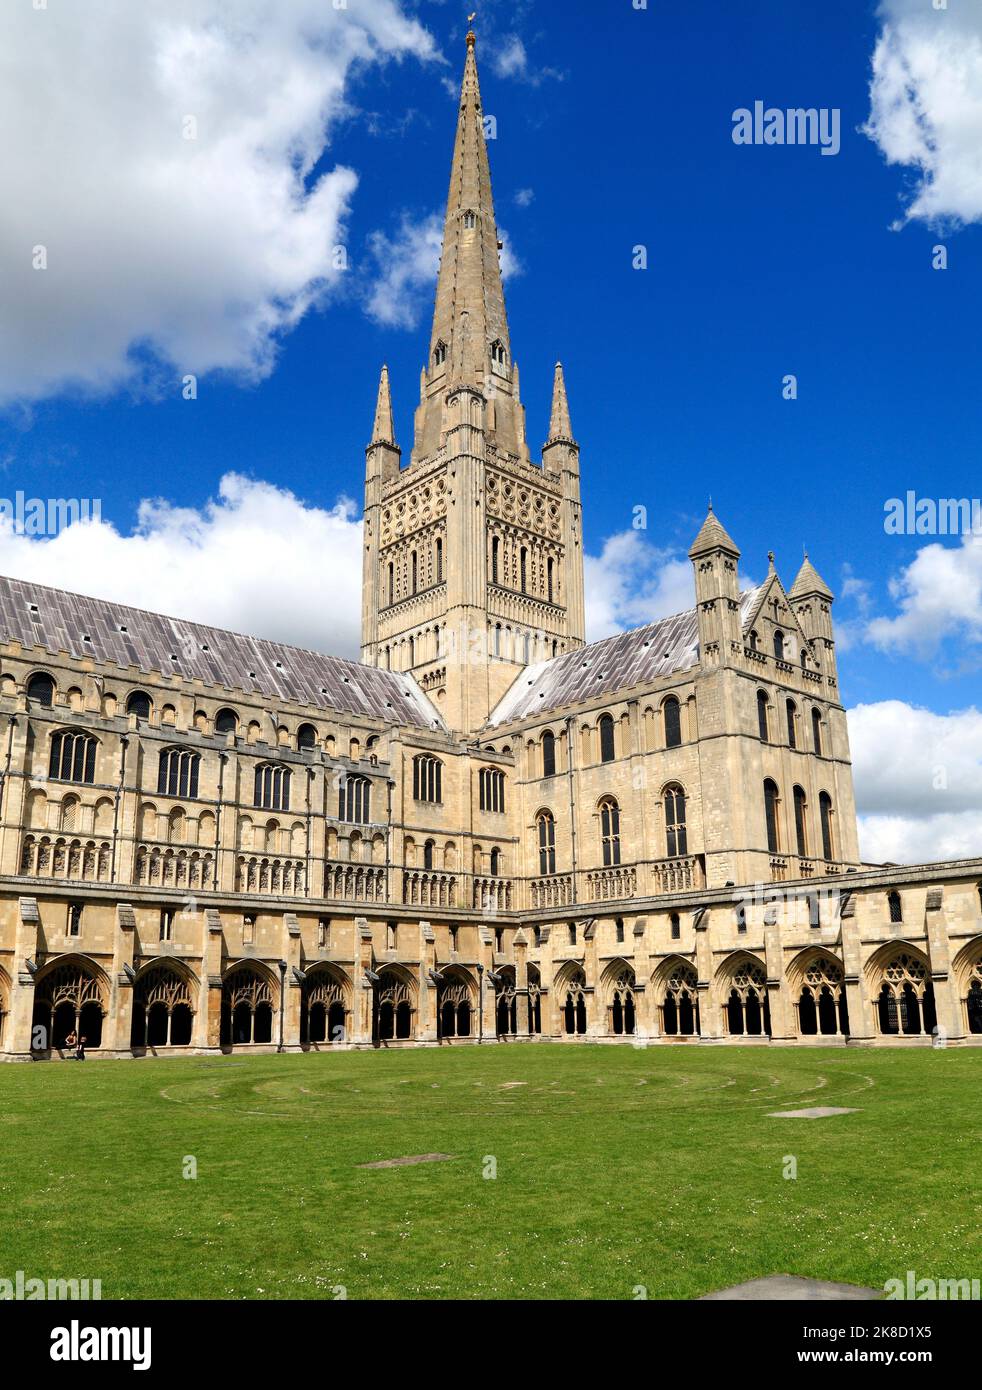 Cathédrale de Norwich, Spire , Nave, transept et cloîtres, architecture médiévale, Cathédrales anglaises, Norfolk, Angleterre, Royaume-Uni Banque D'Images